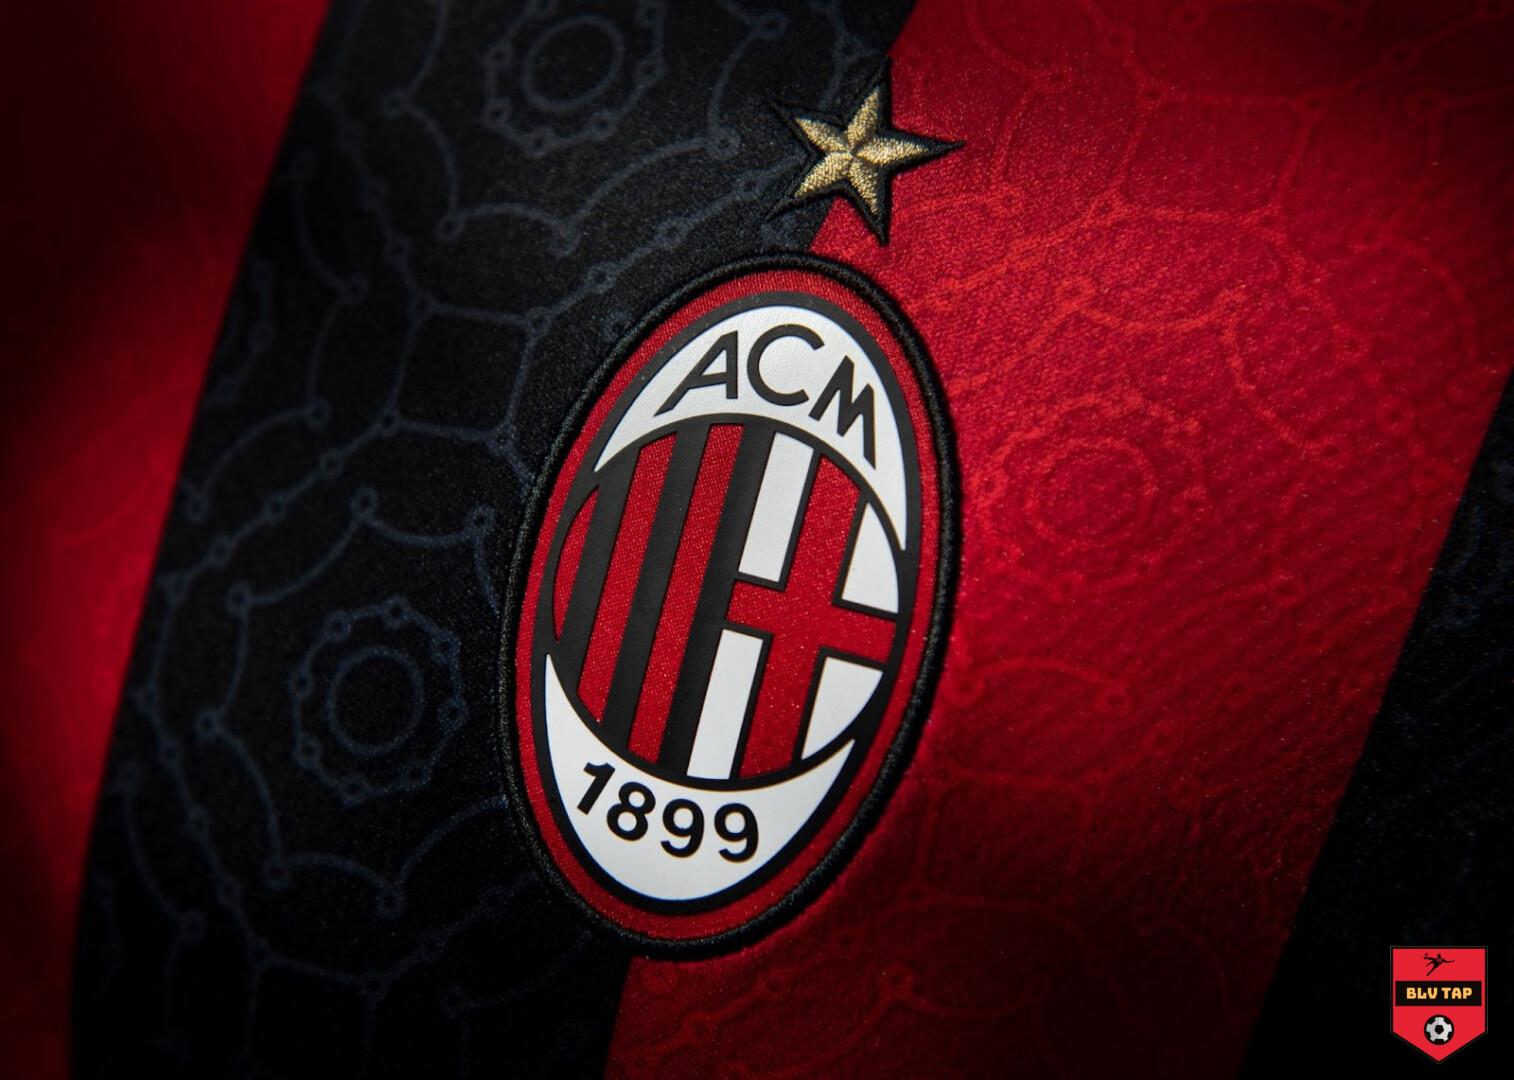 A.C Milan là đội bóng BLV Tap đã theo dõi từ rất lâu